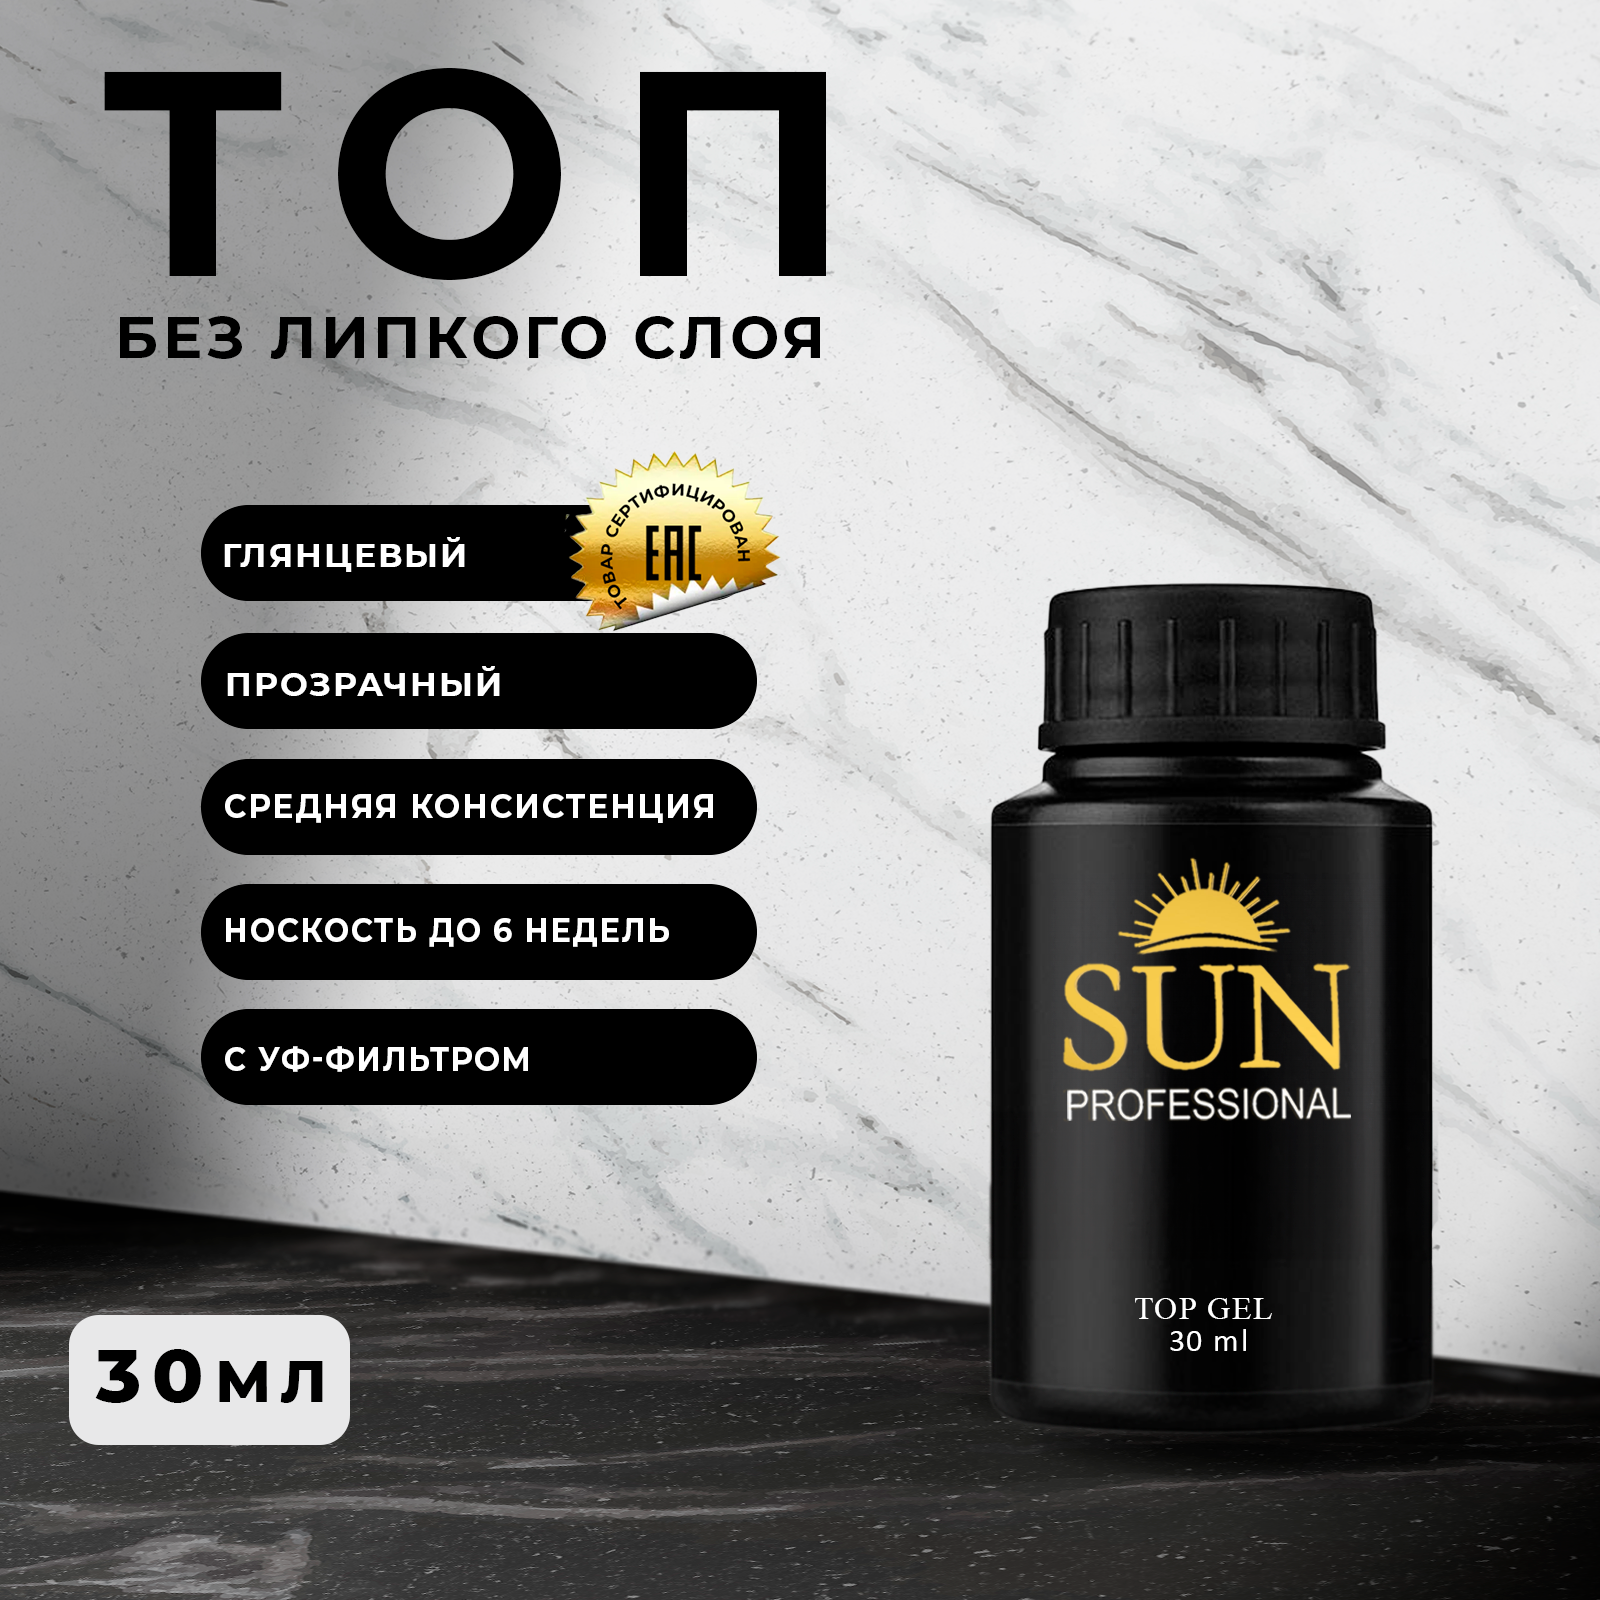 Топ SUN Professional без липкого слоя mg 30мл